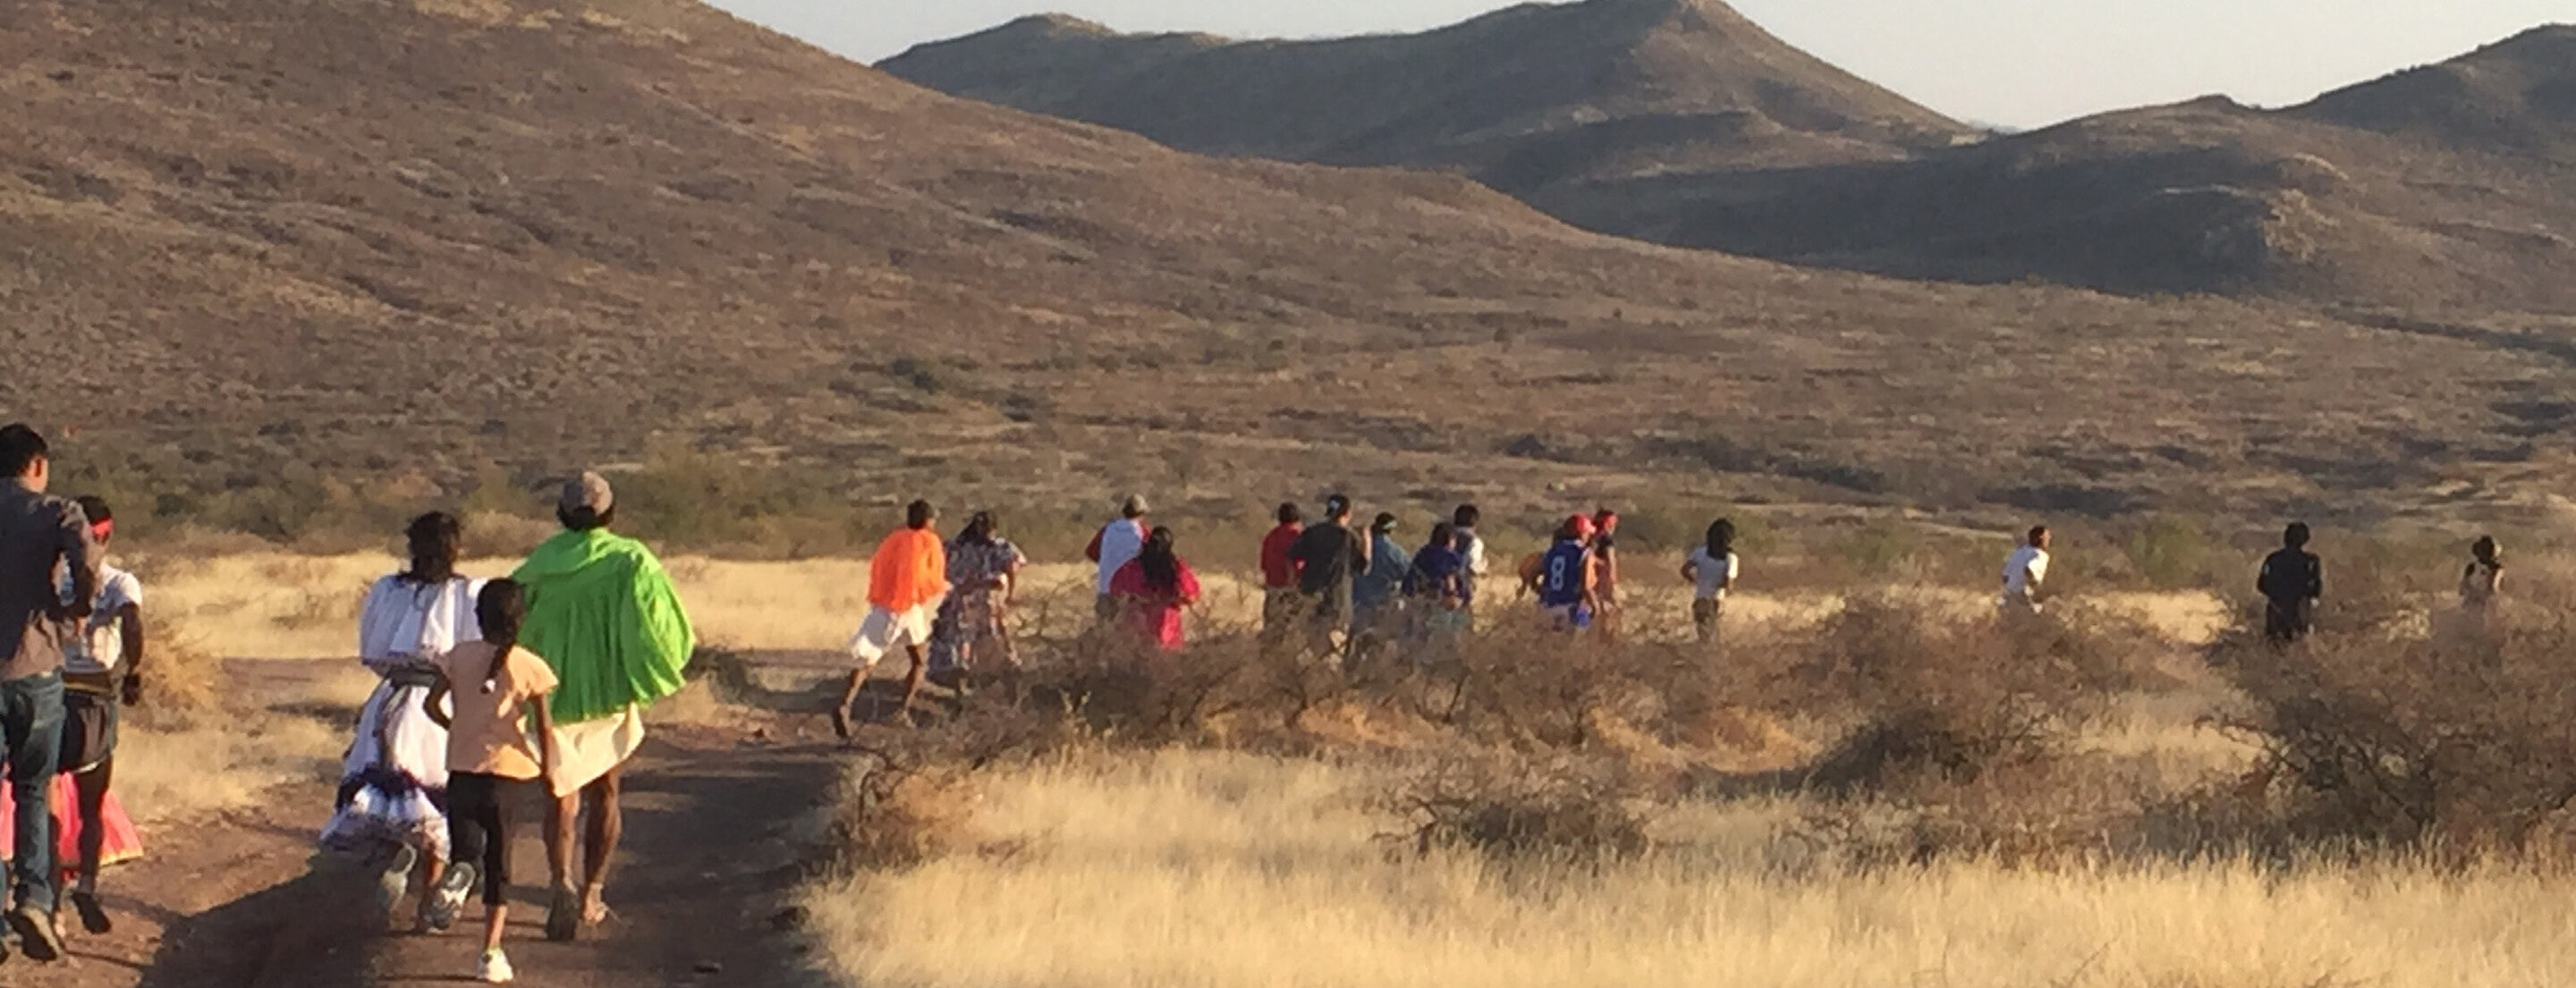 Running In Tarahumara Culture